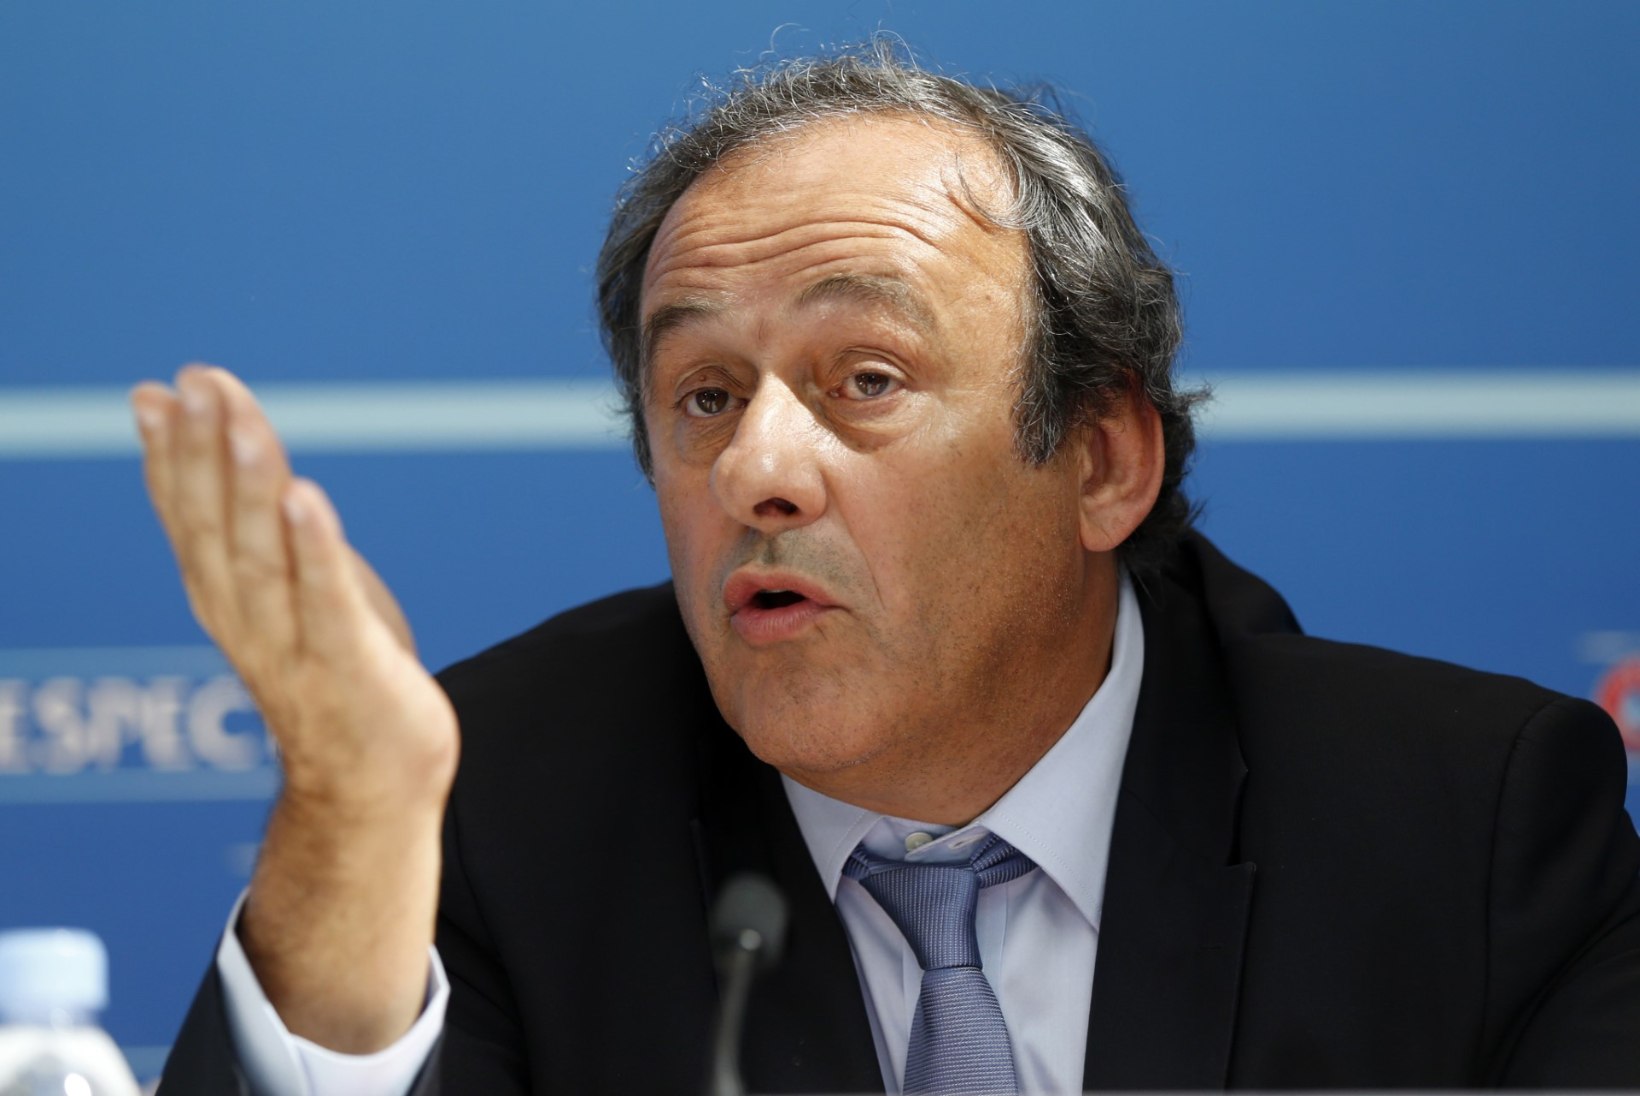 Platinile ja Blatterile soovitakse eluaegset jalgpallis tegutsemise keeldu!